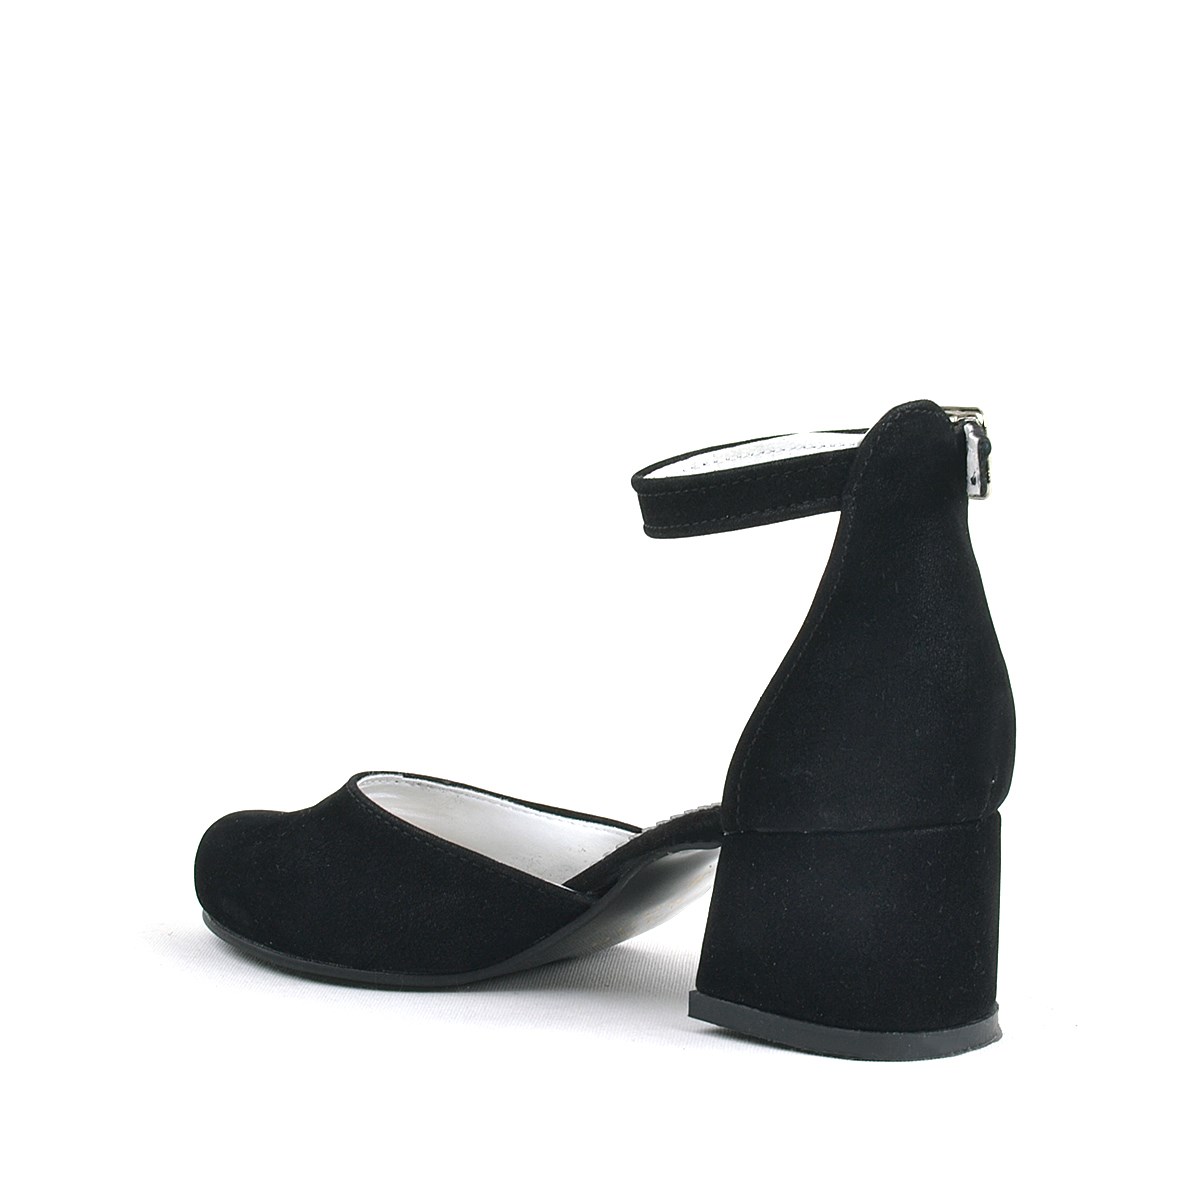 Merida Siyah Süet Kalın Topuklu Kız Çocuk Topuklu Ayakkabı - B630-SN